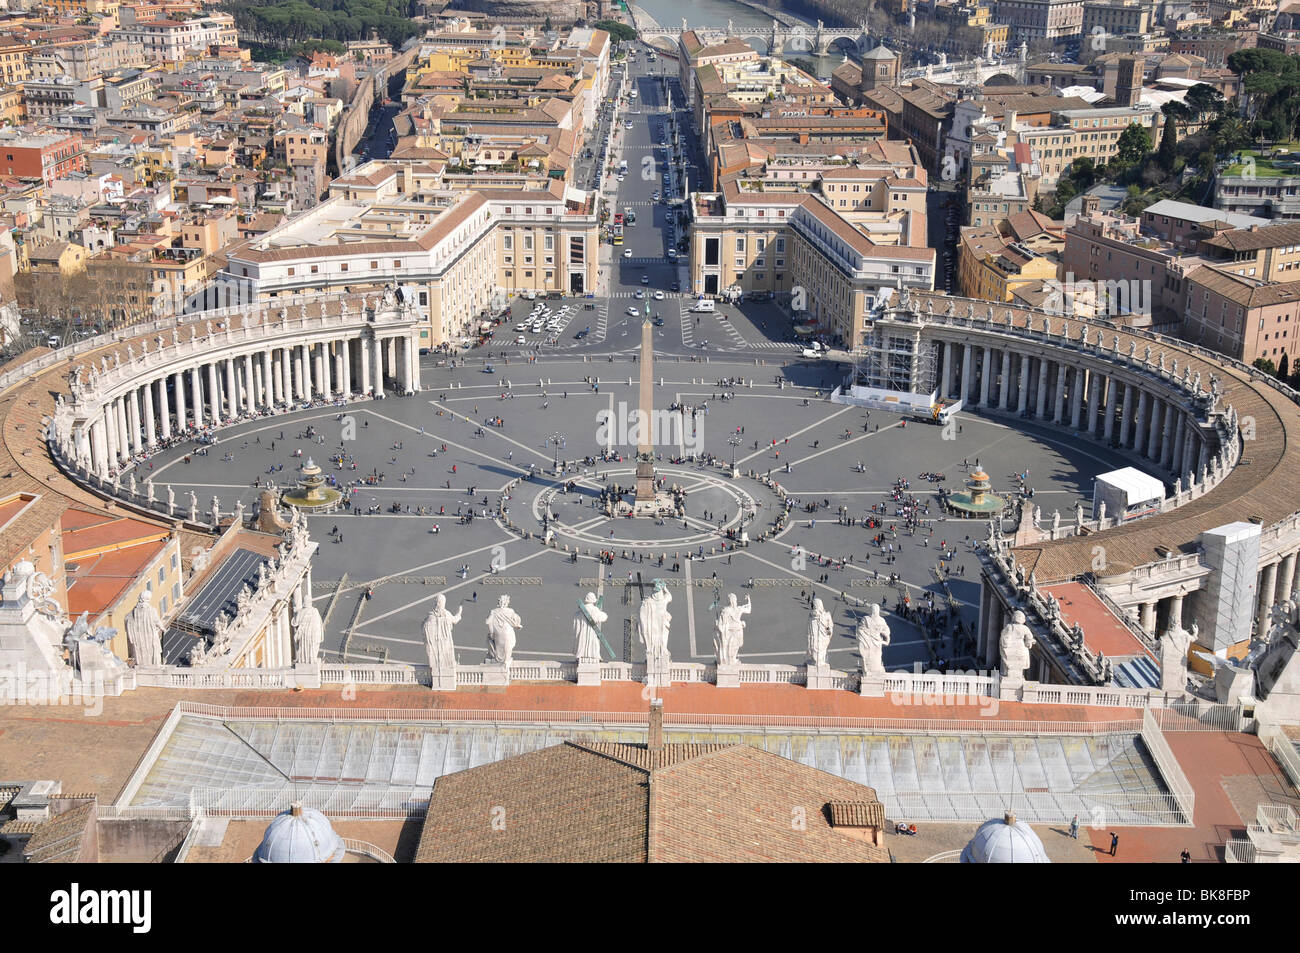 Piazza San Pietro vista dalla cupola della Basilica di San Pietro, dal centro storico, dalla Città del Vaticano, dall'Italia, dall'Europa Foto Stock